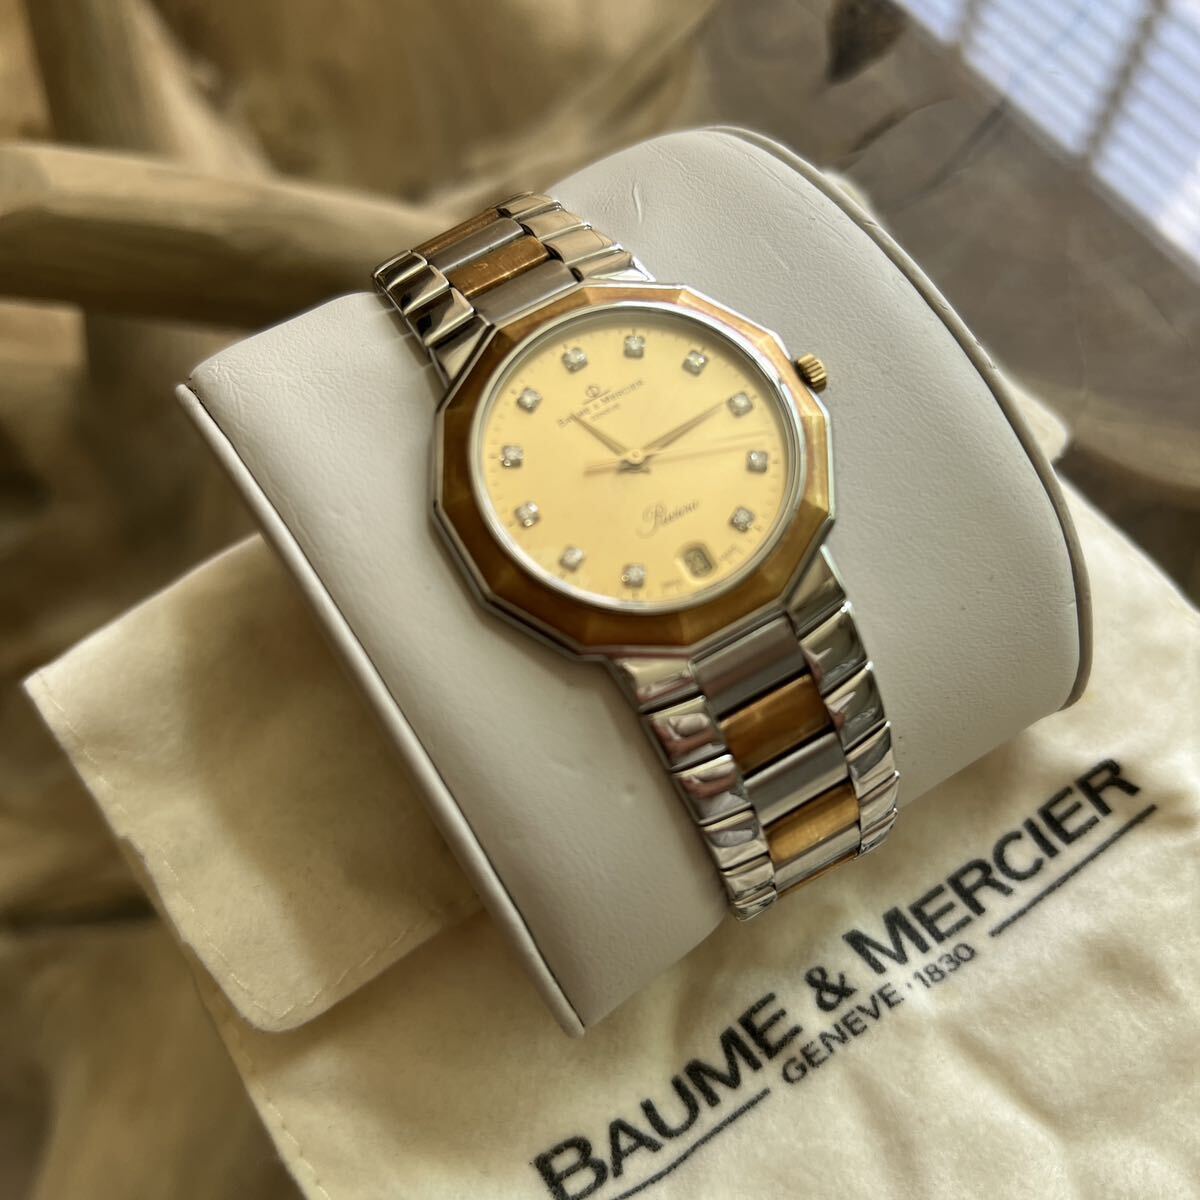 BAUME&MERCIER ボーム&メルシエ 腕時計 メンズ 11Pダイヤ RIVIERA リビエラYGxSS コンビ ゴールド文字盤 デイト 可動品の画像3